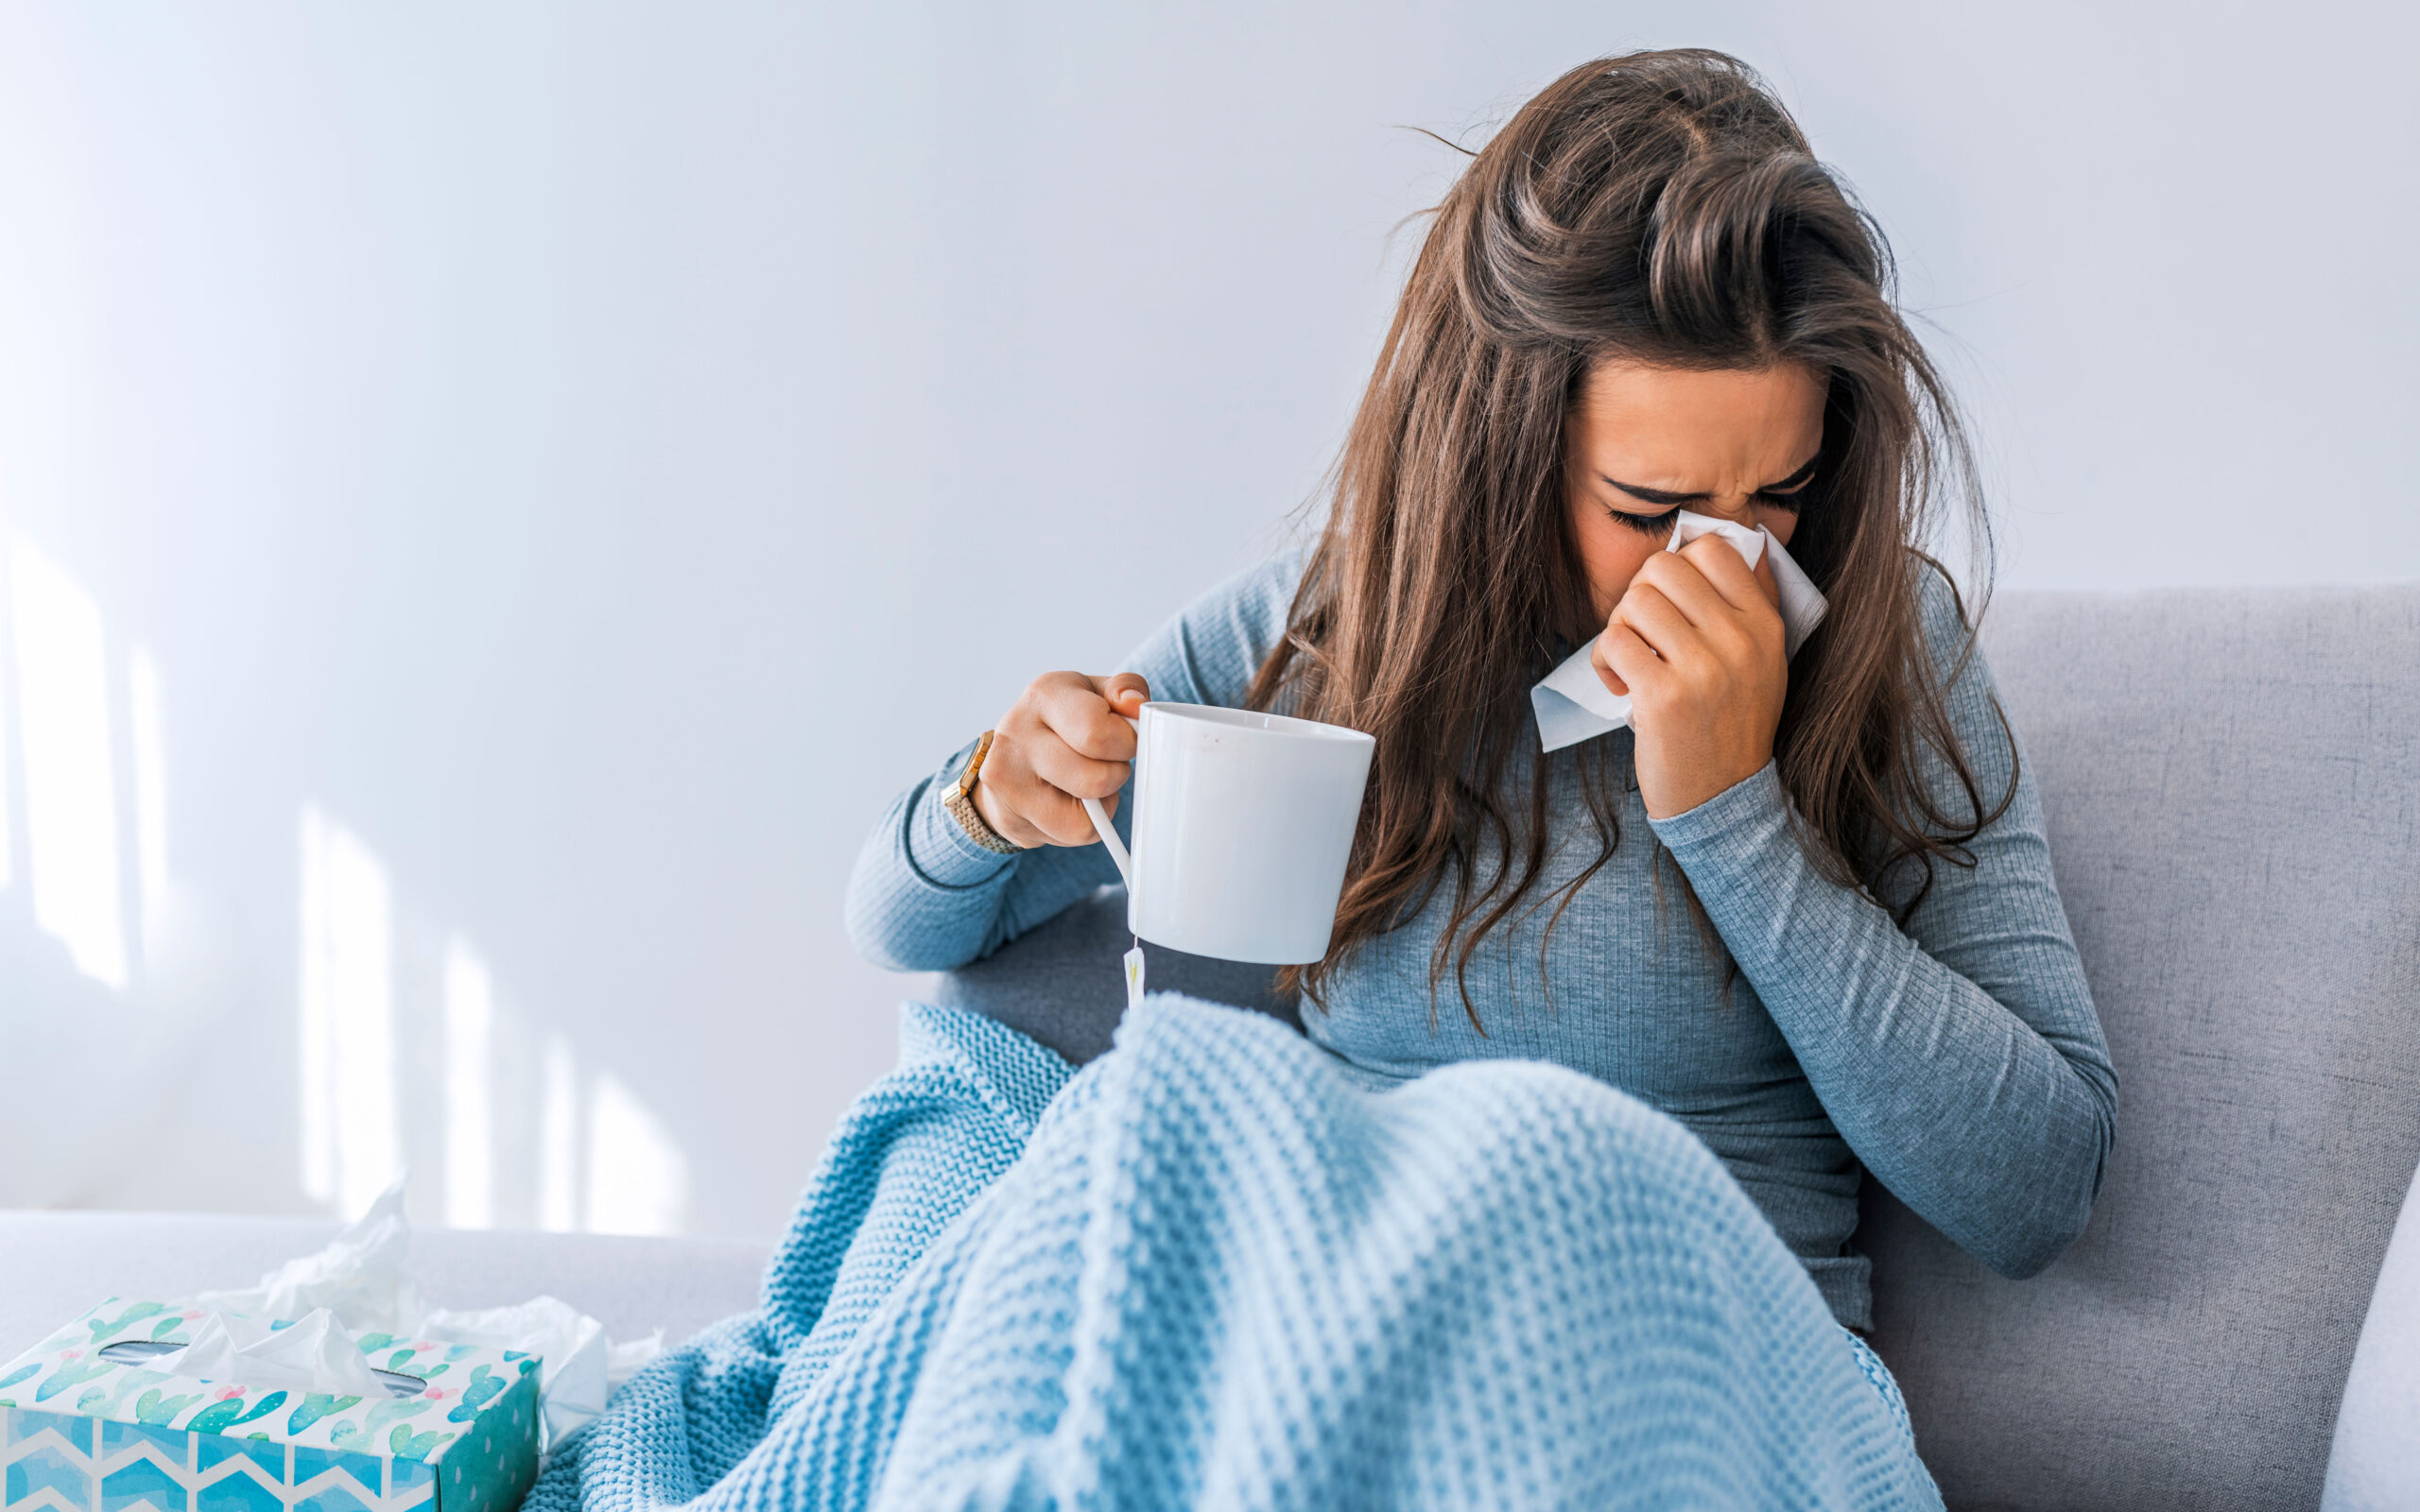 Χριστούγεννα με τις ιογενείς λοιμώξεις σε έξαρση – Σαρώνει η γρίπη στις  ηλικίες 5 έως 14 ετών | Η ΚΑΘΗΜΕΡΙΝΗ